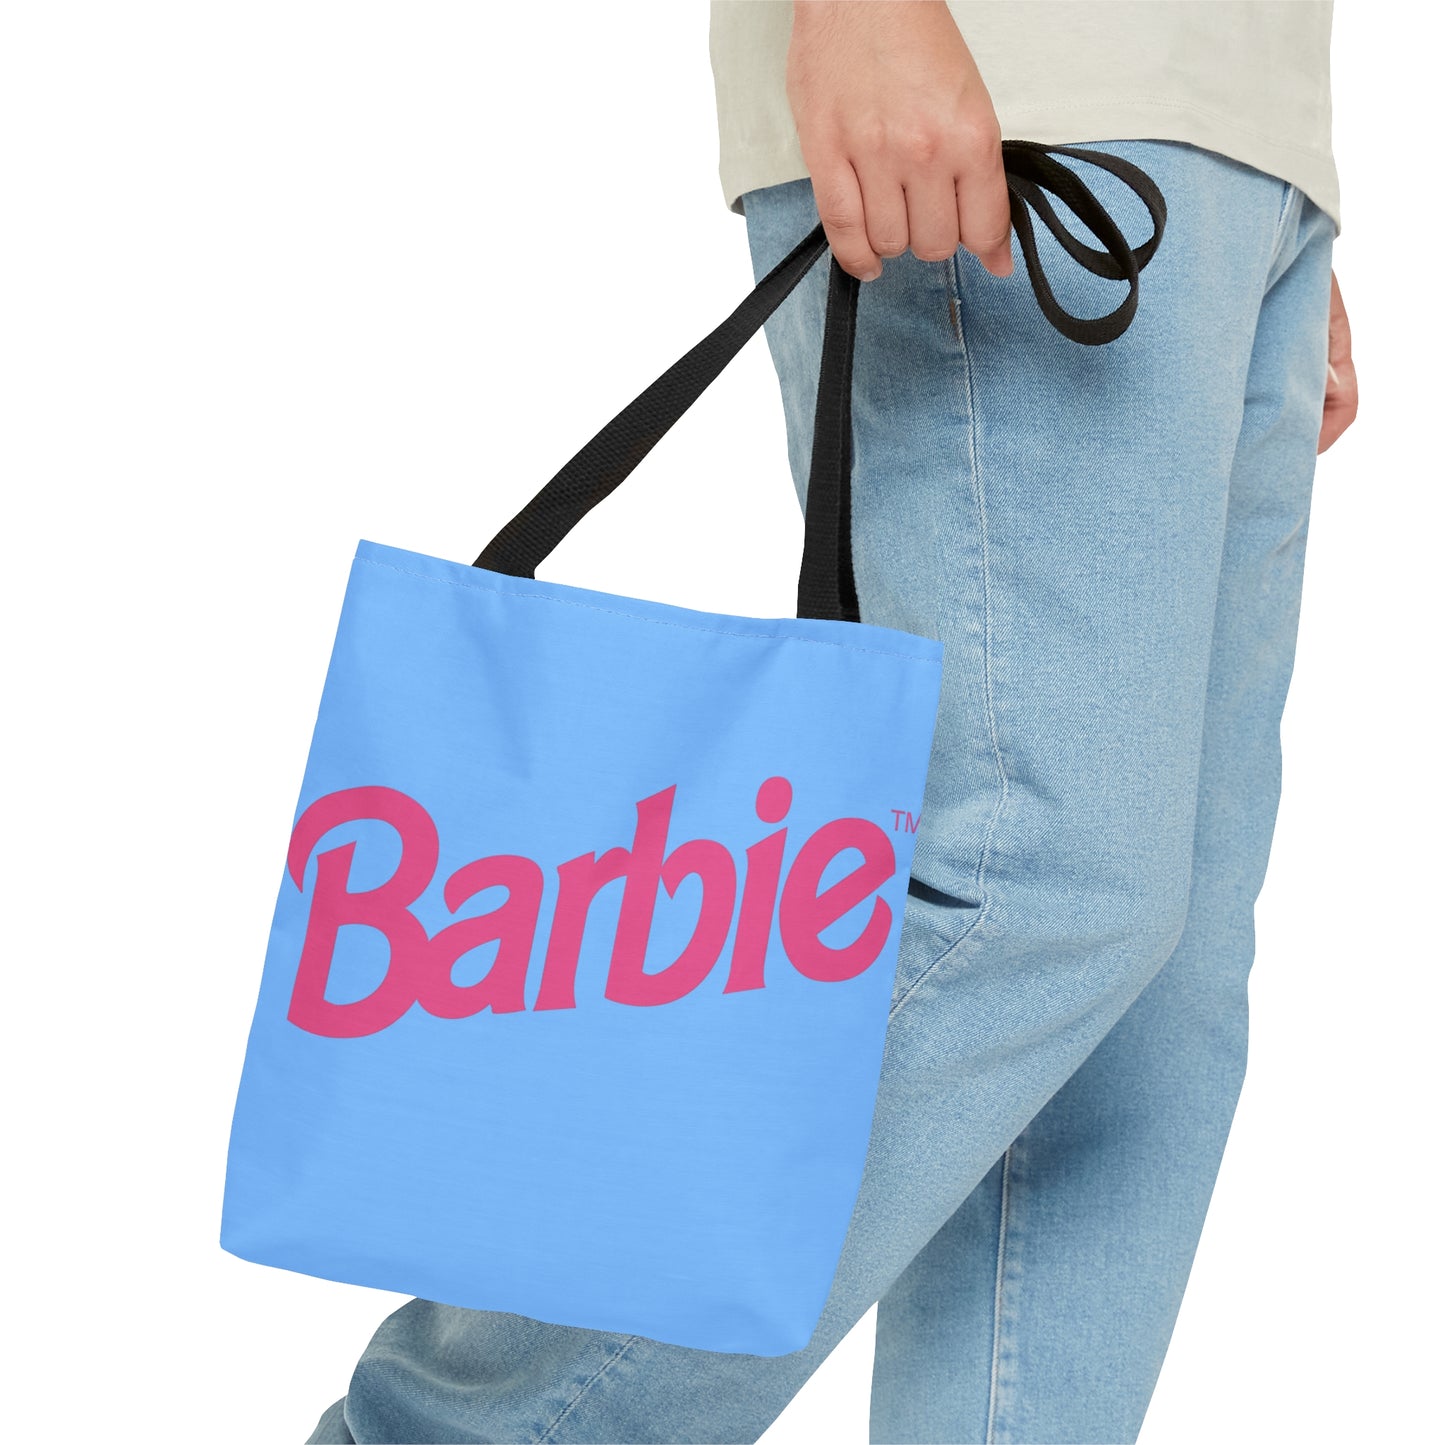 BARBIE Pastel Blue Tote Bag